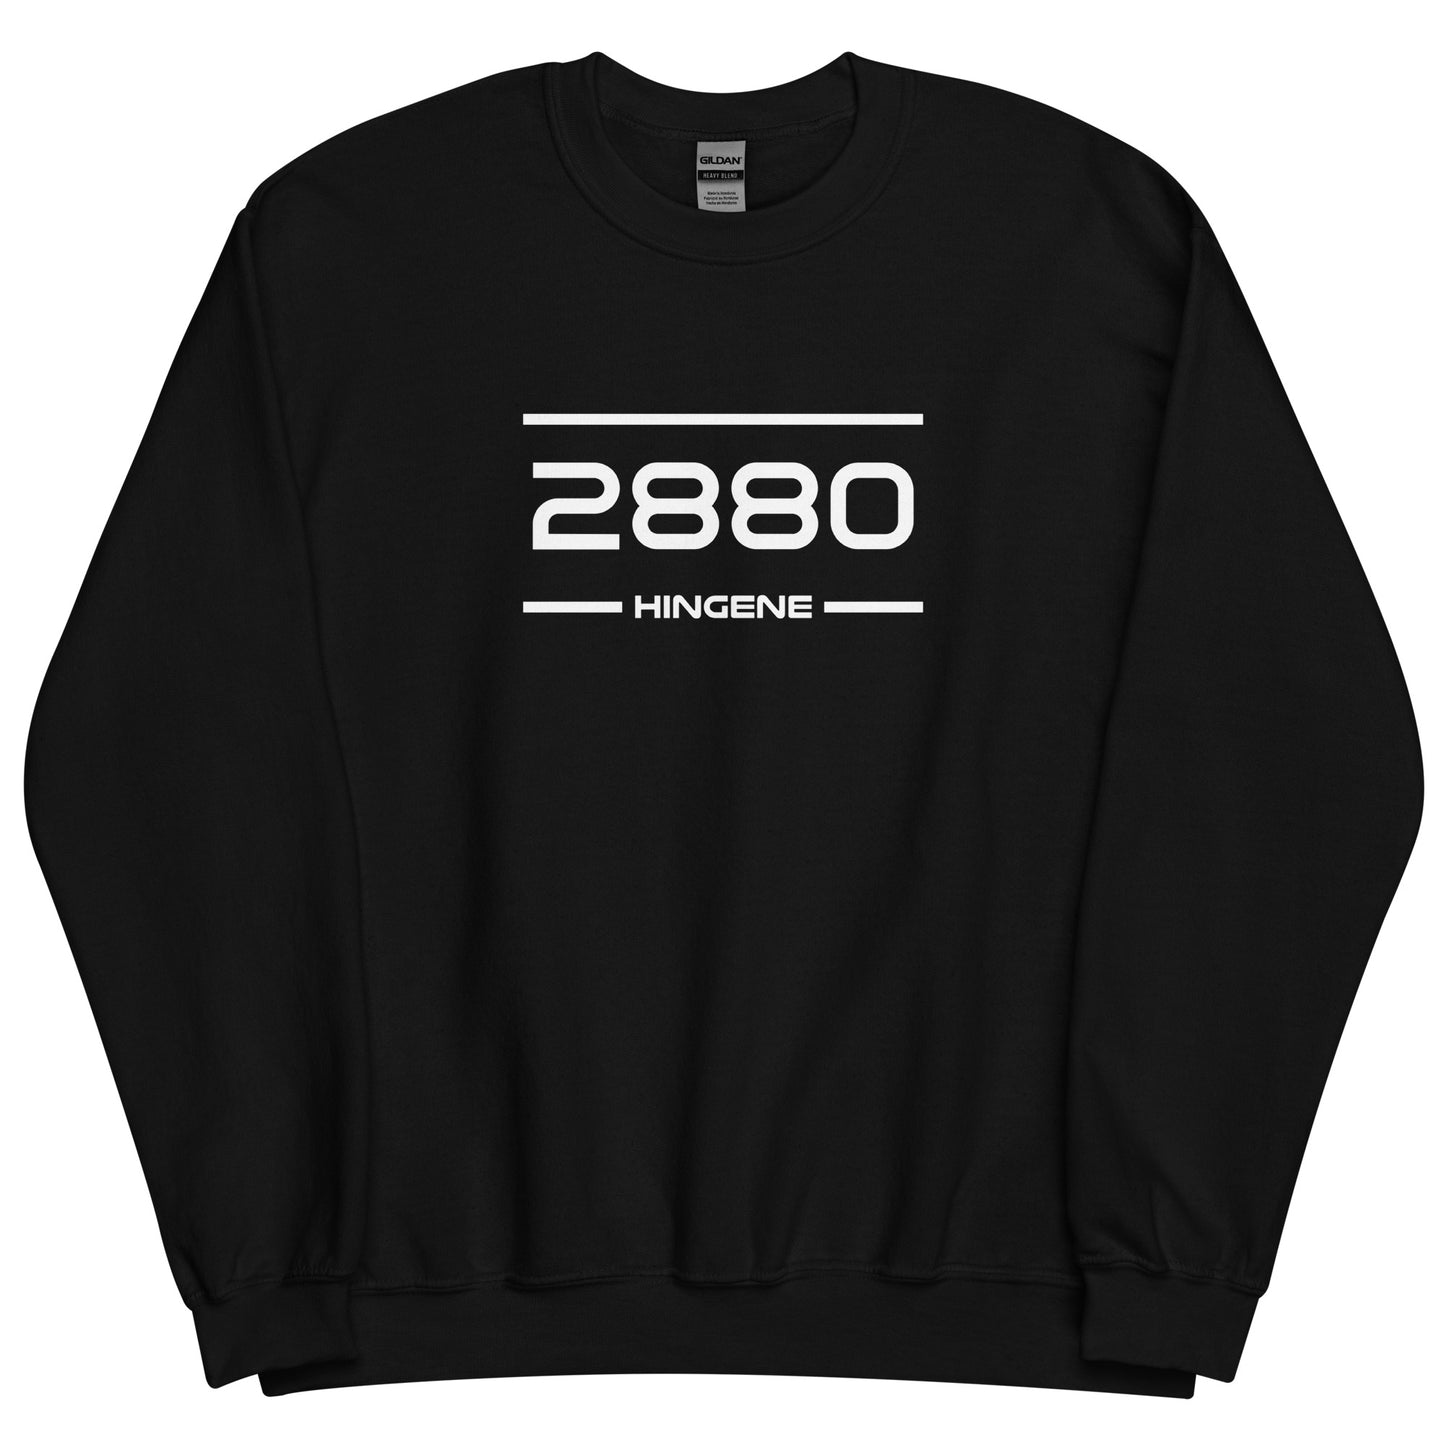 Sweater - 2880 - Hingene (M/V)